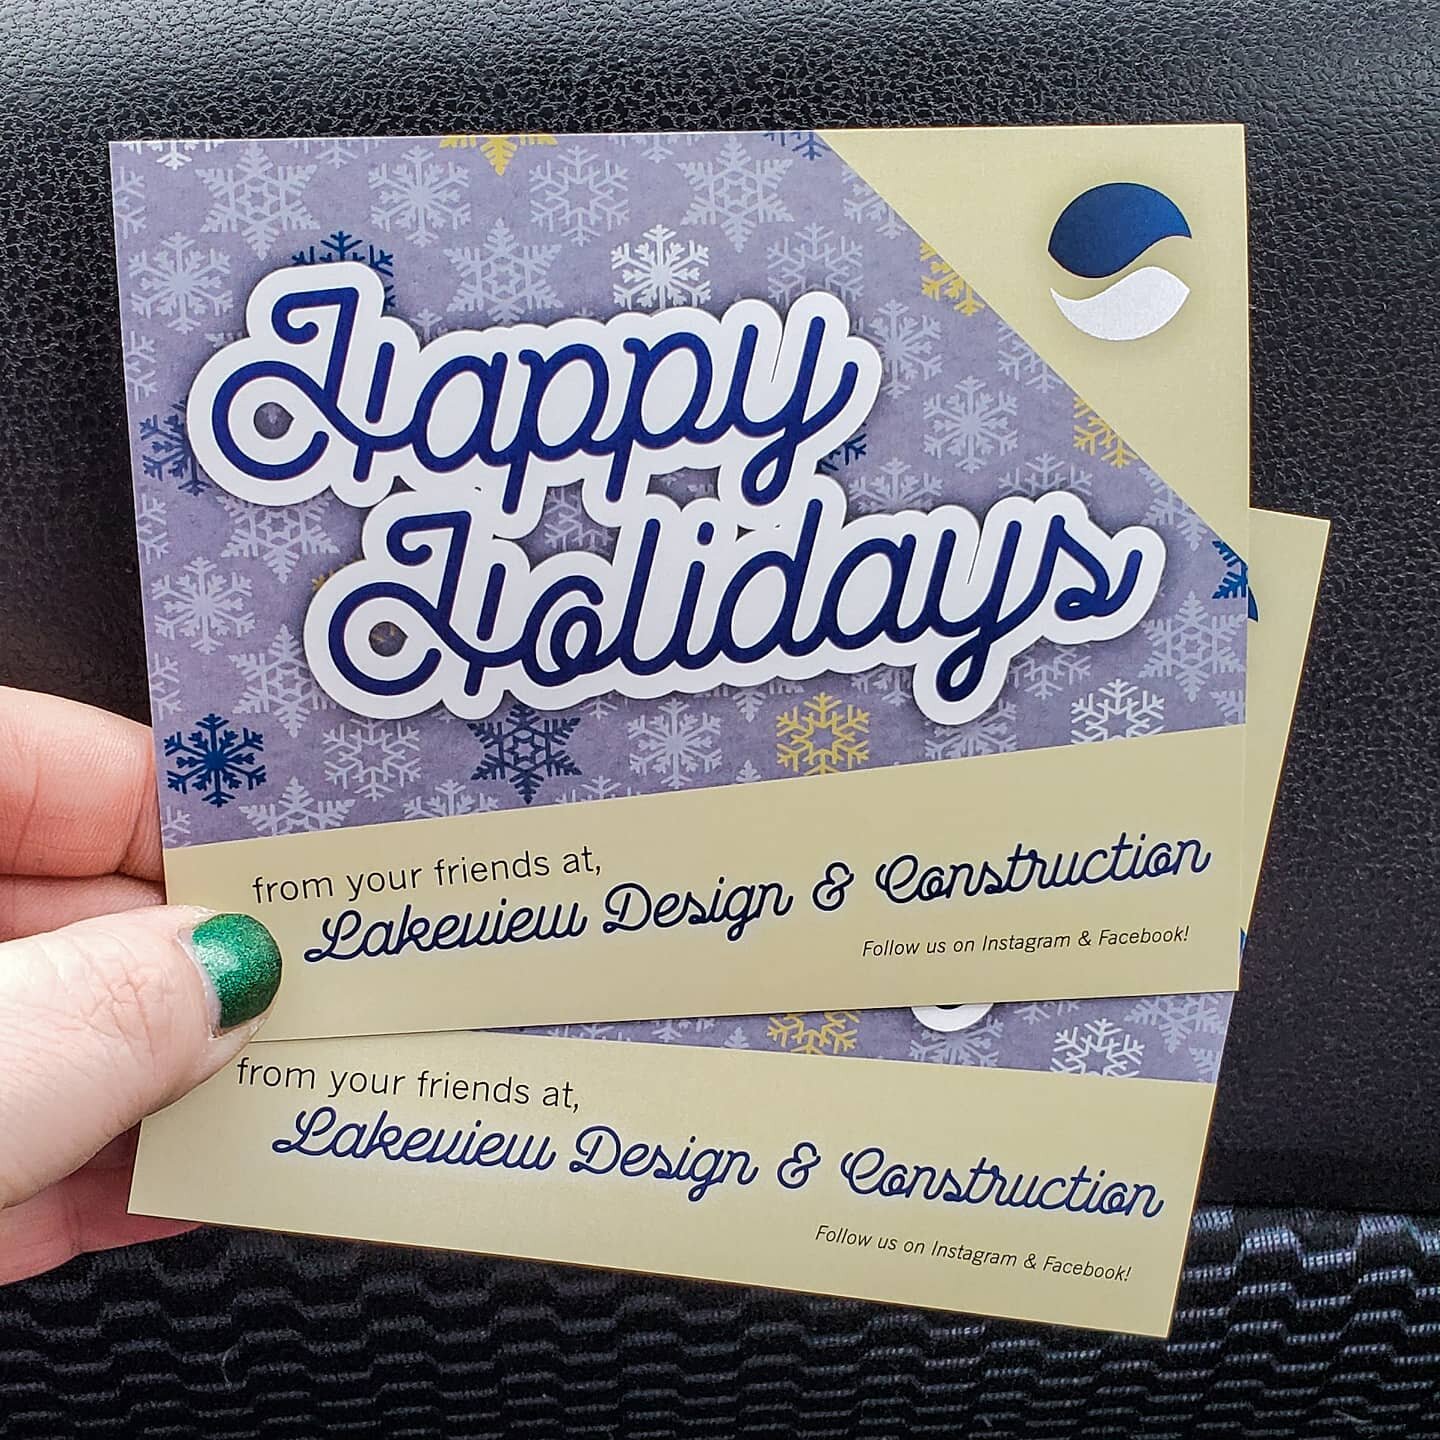 Holiday Cards for @lakeviewdesignco 🌲
#holidaycard #holidays #merrychristmas #happyhanukkah #happyholidays #instalove #instadesign #jacqiethedesigner